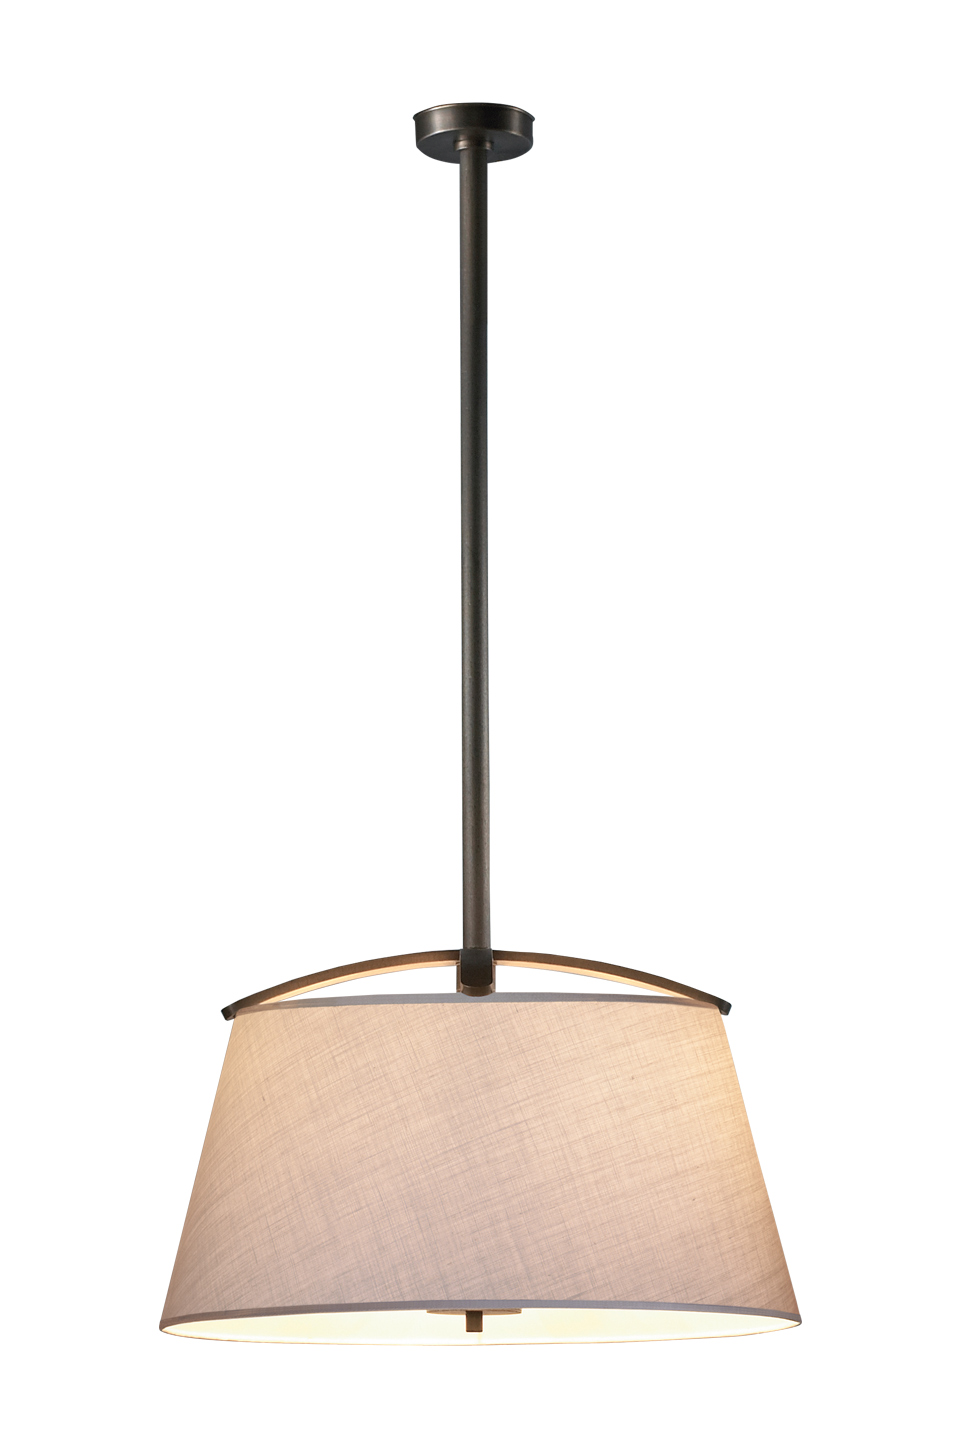 Pia è una lampada a sospensione in bronzo a LED con paralume bordato a mano, del catalogo di Promemoria | Promemoria